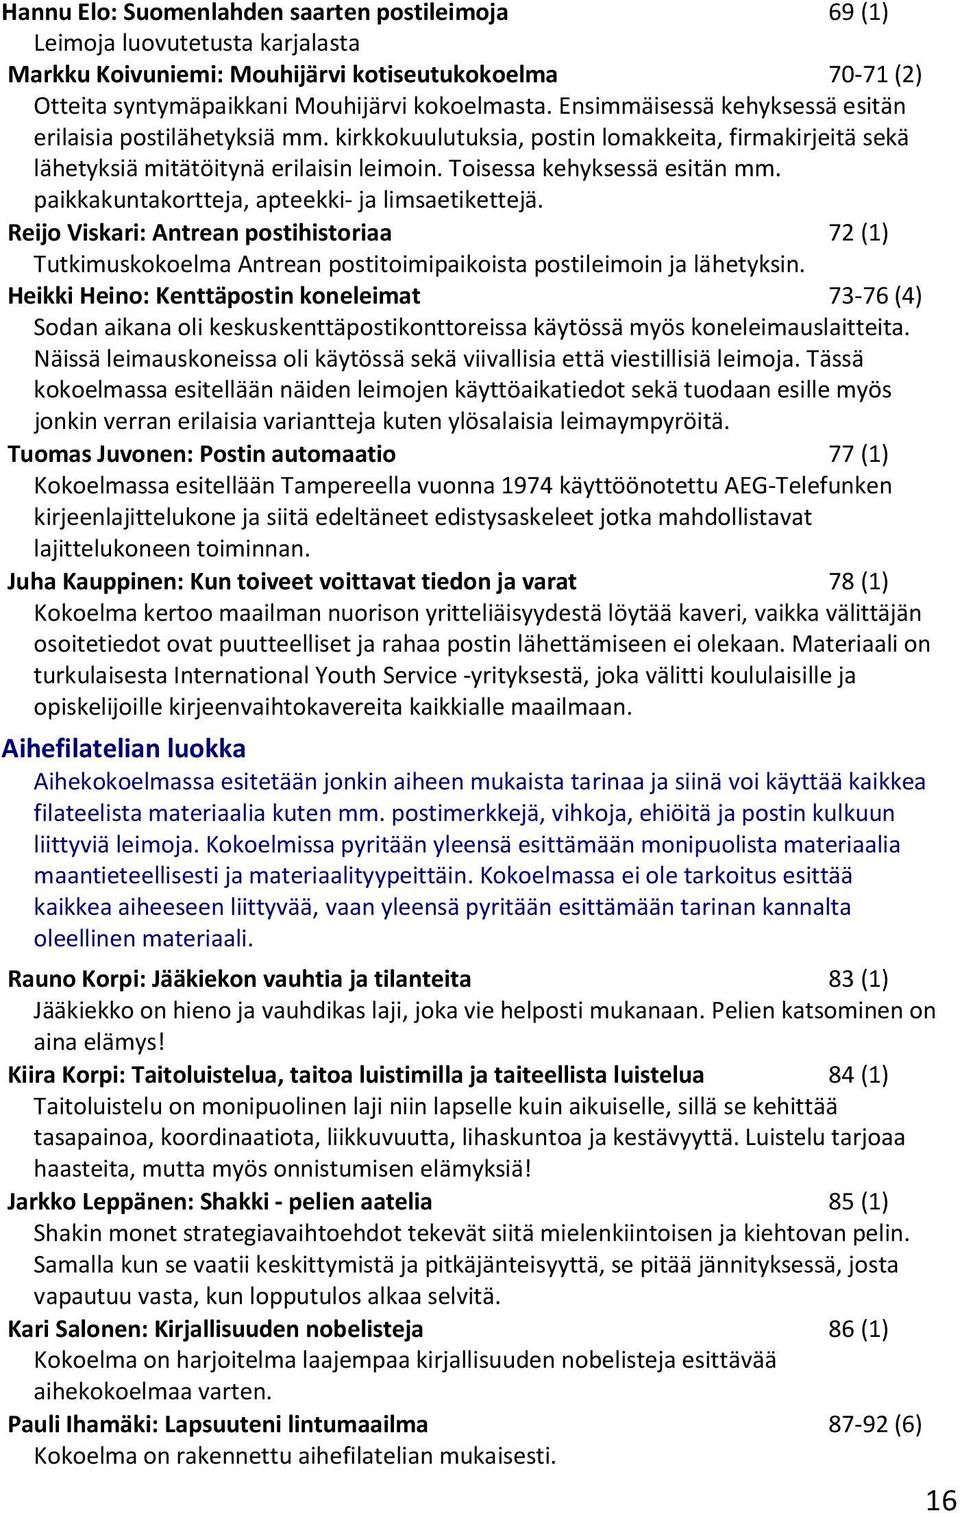 paikkakuntakortteja, apteekki- ja limsaetikettejä. Reijo Viskari: Antrean postihistoriaa 72 (1) Tutkimuskokoelma Antrean postitoimipaikoista postileimoin ja lähetyksin.